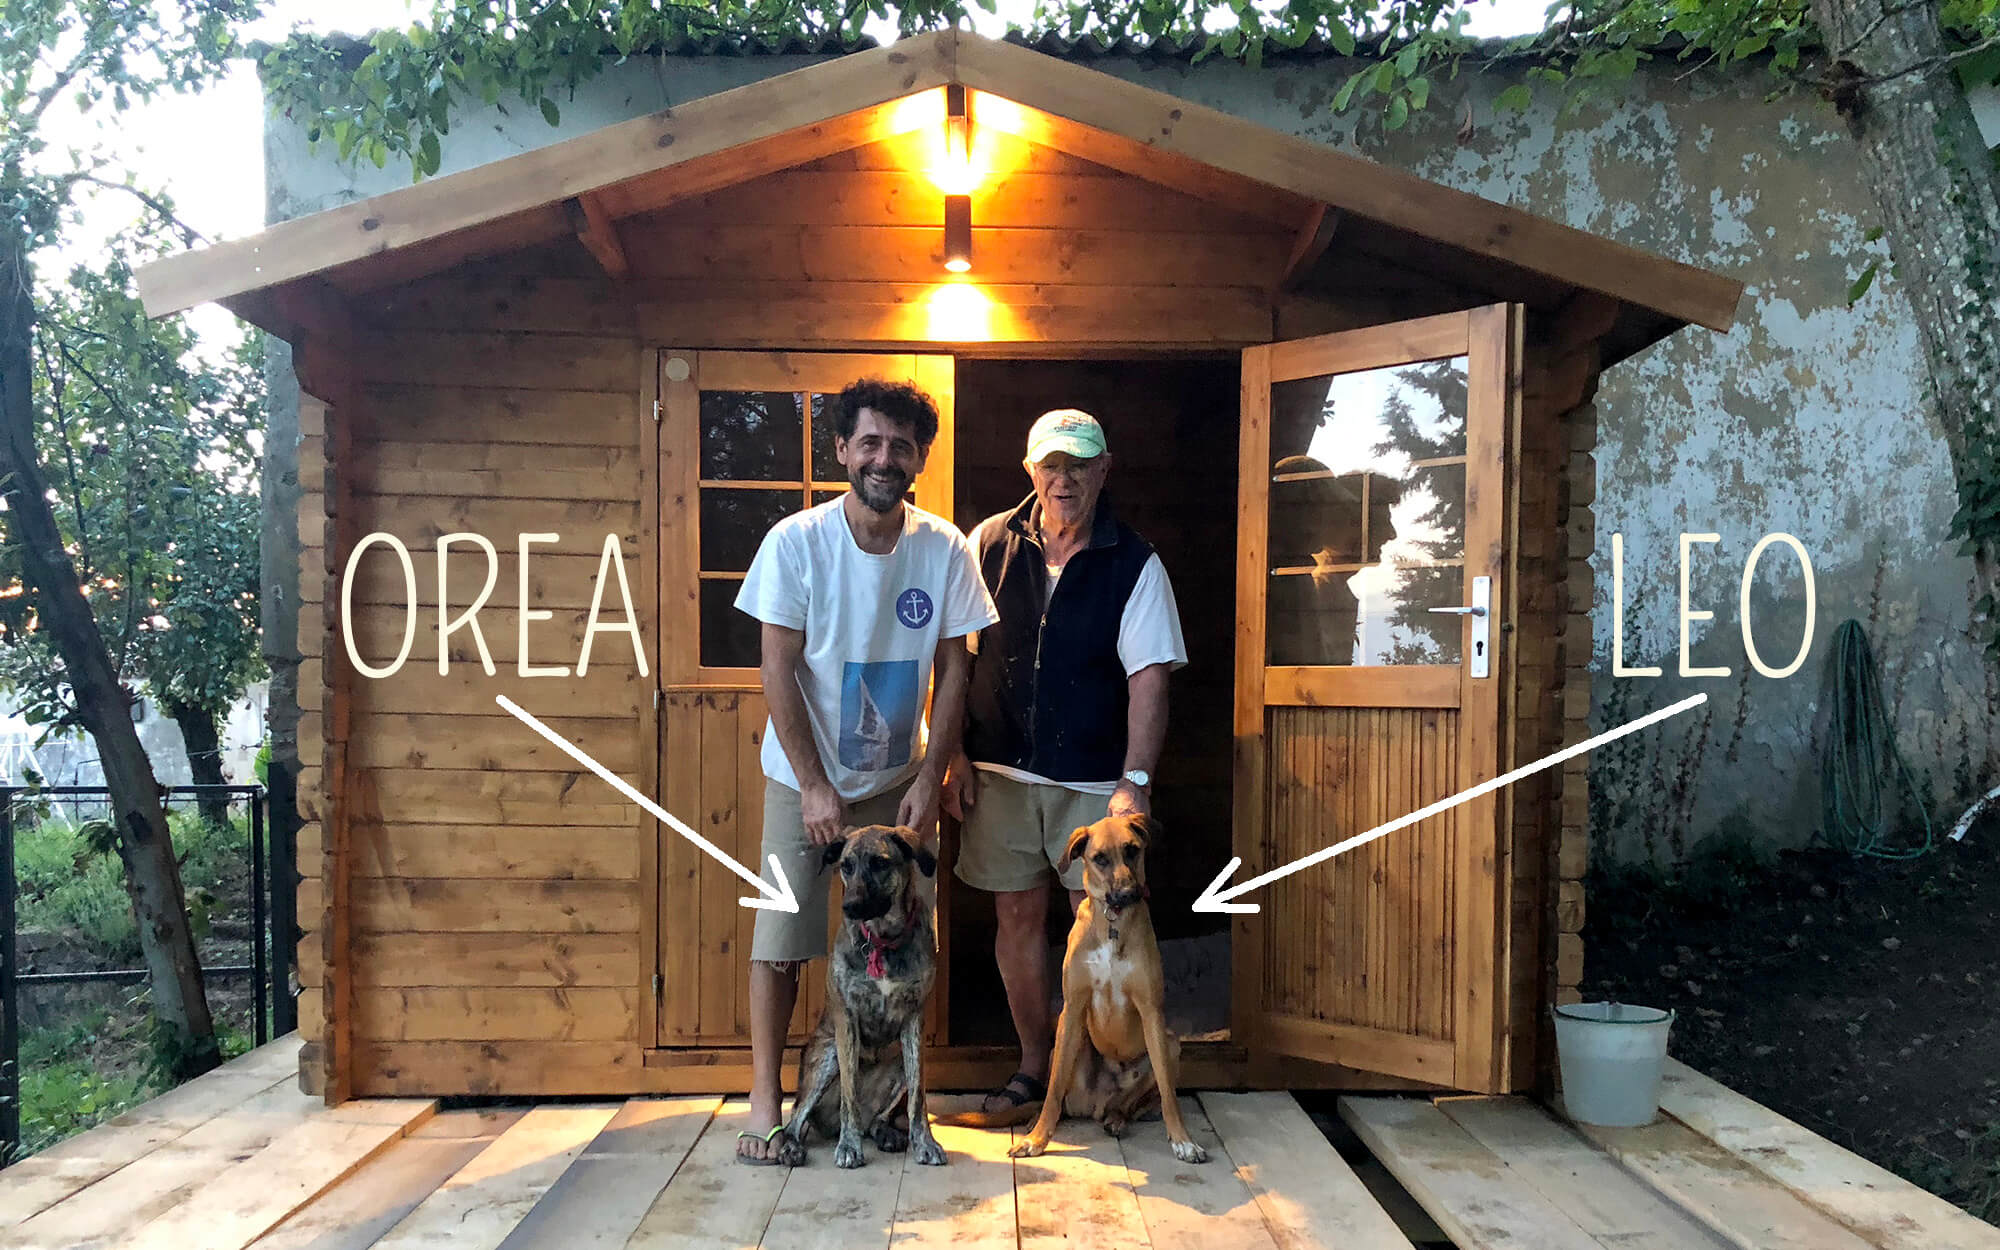 Fabrizio e Giorgio posano con i cani Leo e Orea davanti alla casetta in legno dell'area giochi per cani al Podere Camaiano